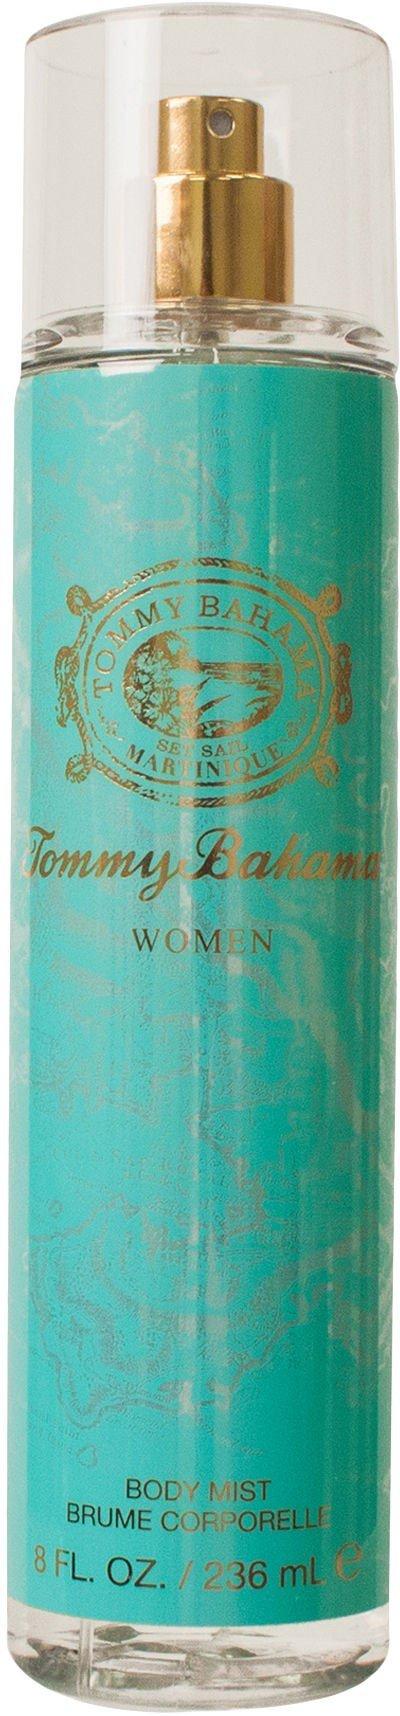 tommy bahama women's body spray